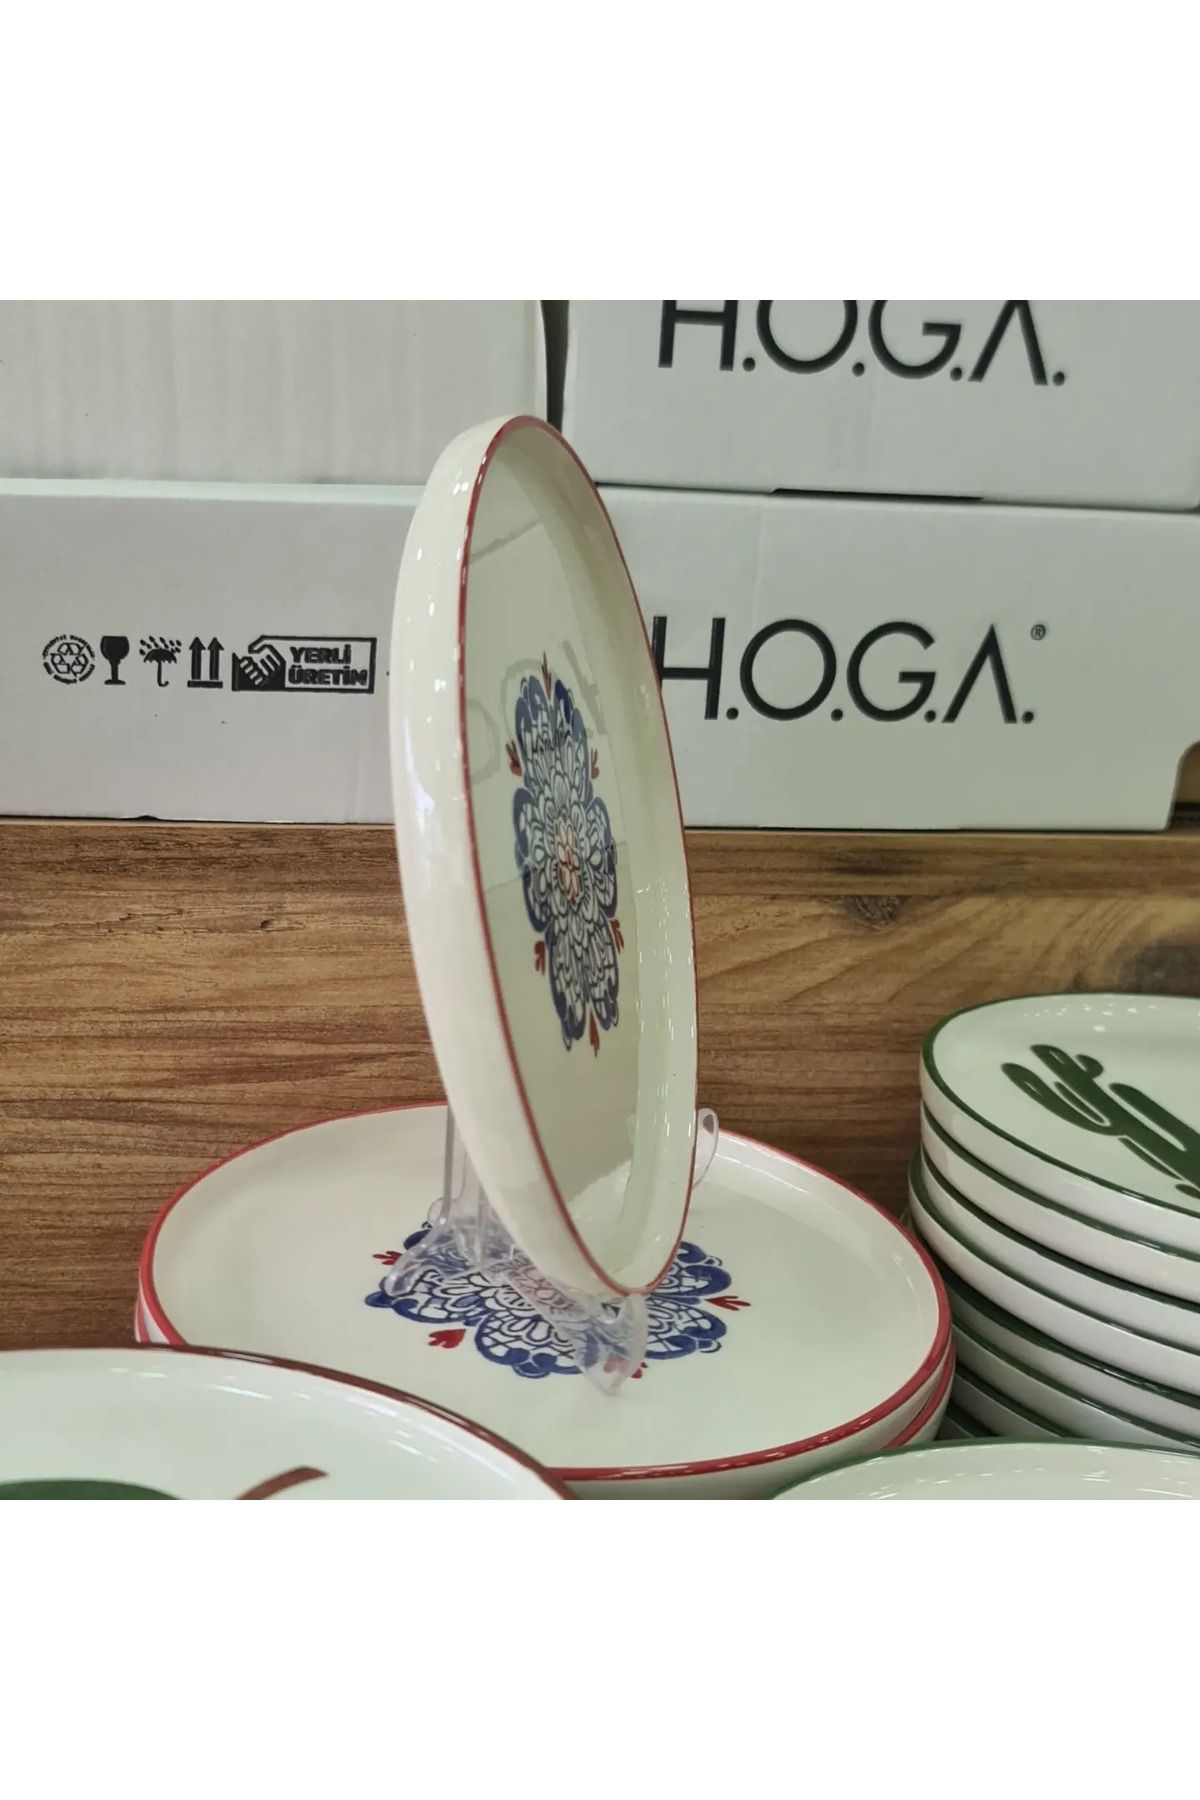 HOGA PORSELEN ÇNR HOME - H.O.G.A Porselen Pasta Tabağı ( 6 adet )